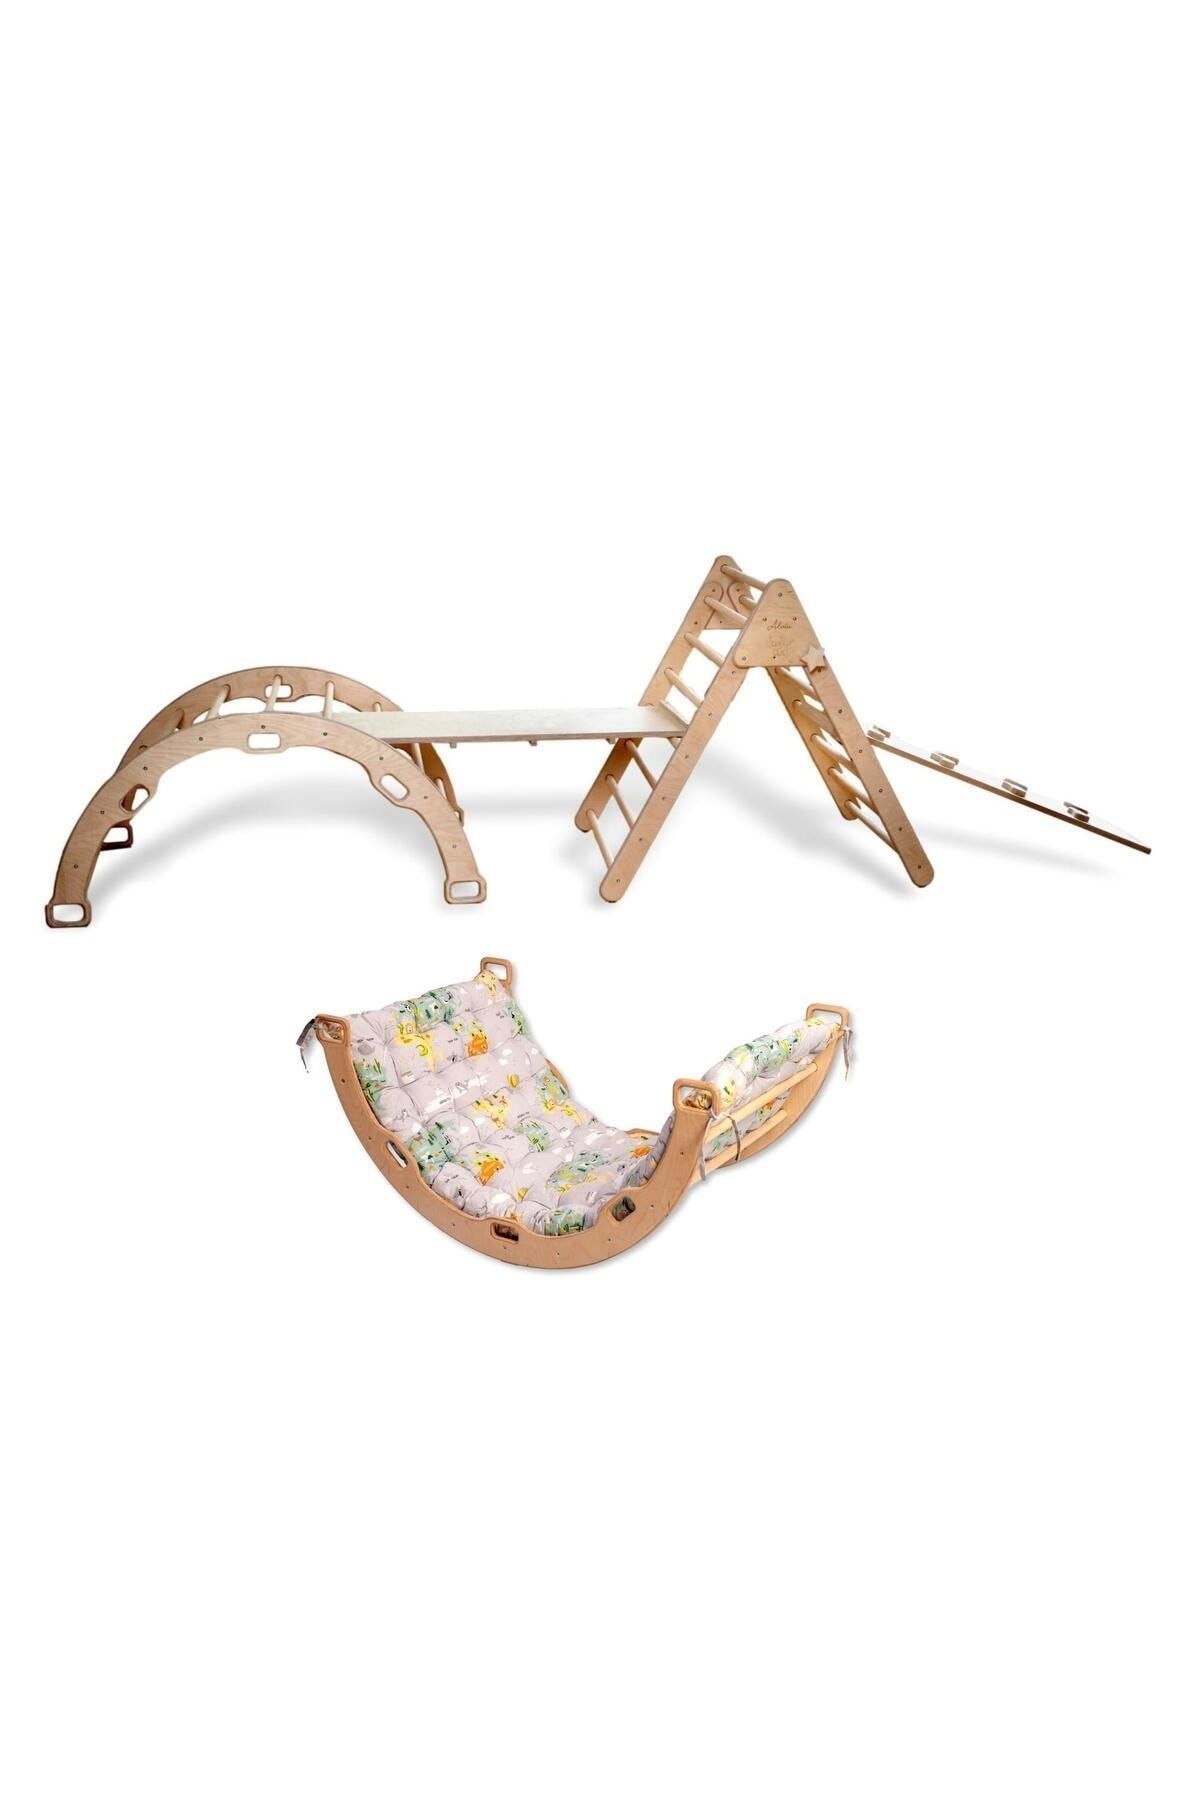 KIDOPPO Pikler Tırmanma Seti | Montessori Tam Set Ve Desenli Yastık | Üçgen&kemer&2 Adet Rampa&harita Yastık